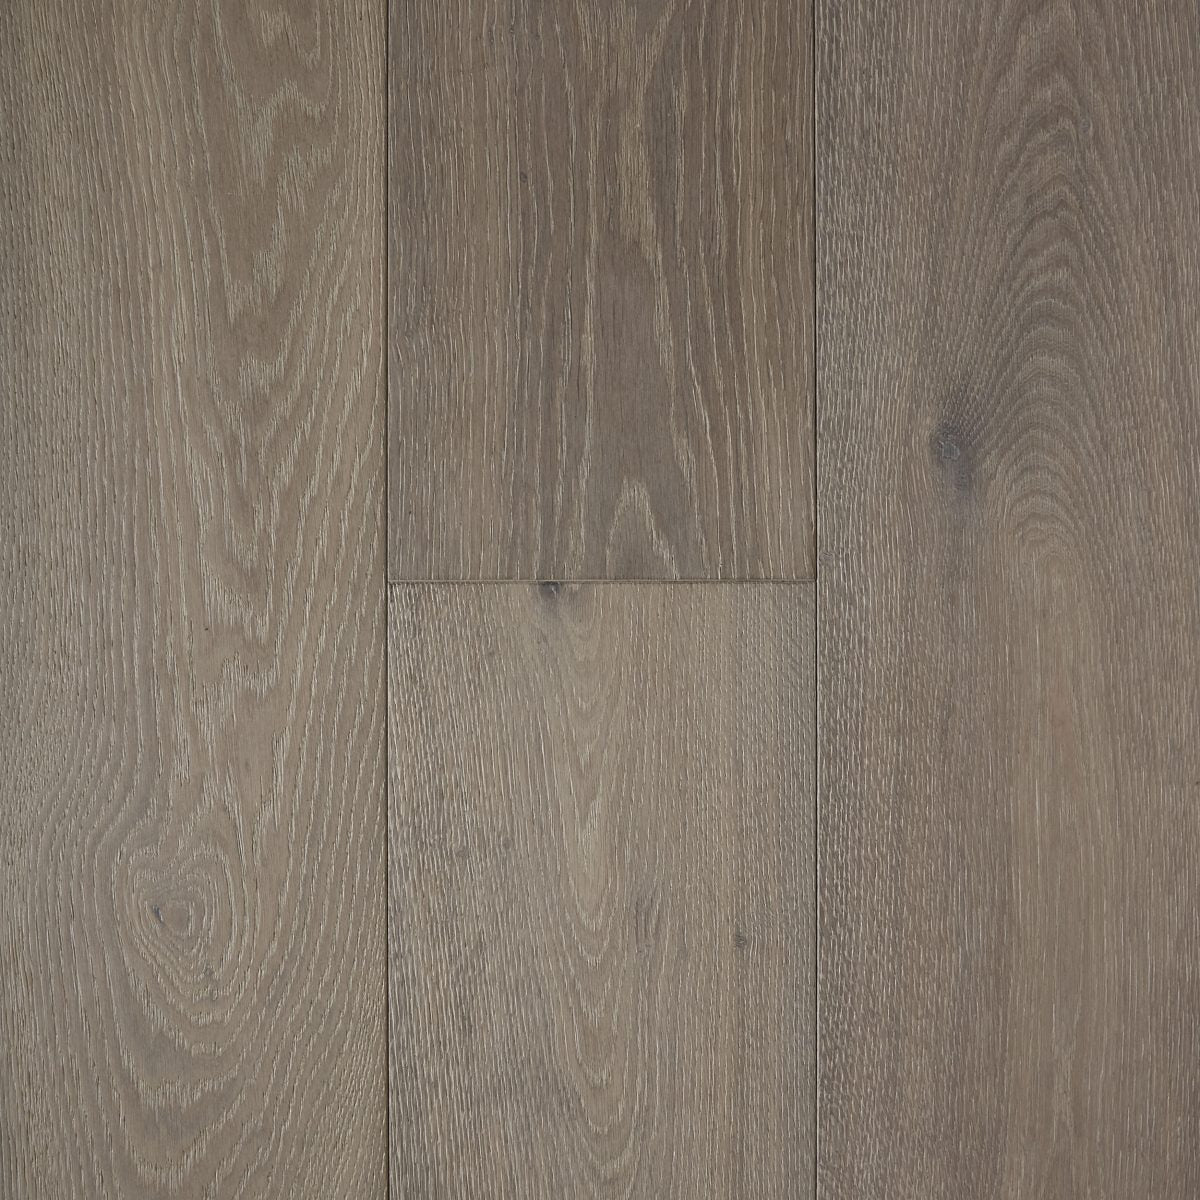 Pronto Engineered Oak Hardwood Floor "Seafoam"